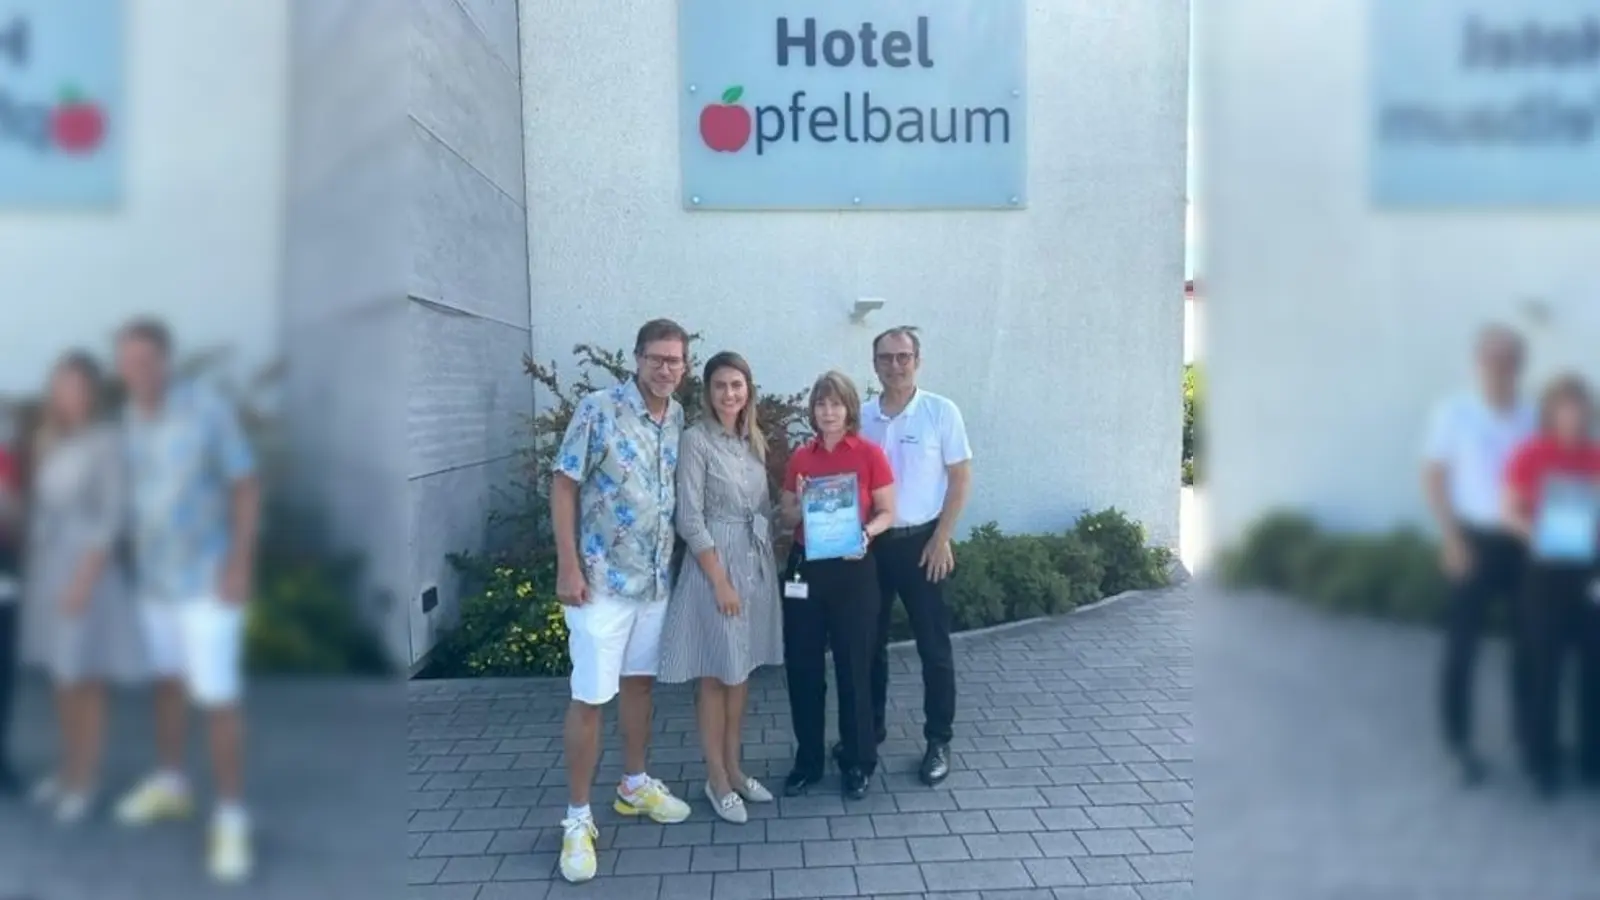 Die Therme Erding und das Stadtmarketing übergaben die Auszeichnung an das Hotel Apfelbaum. (Foto: Therme Erding)